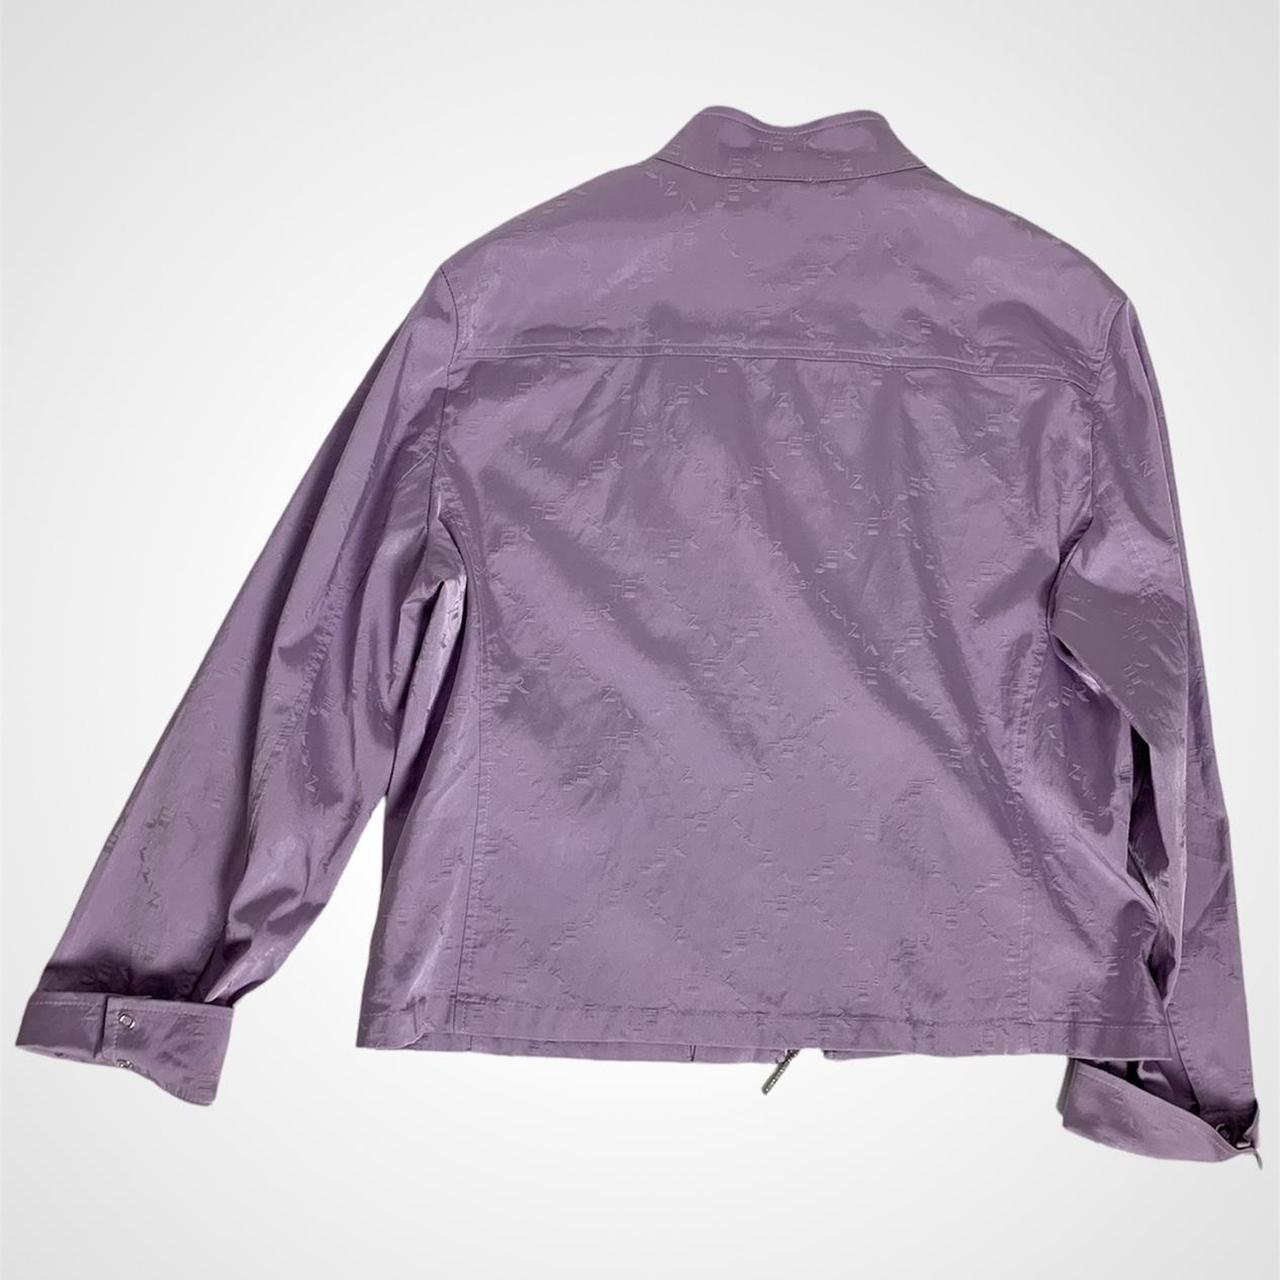 Spanish vintage 90s zip-up purple biker jacket